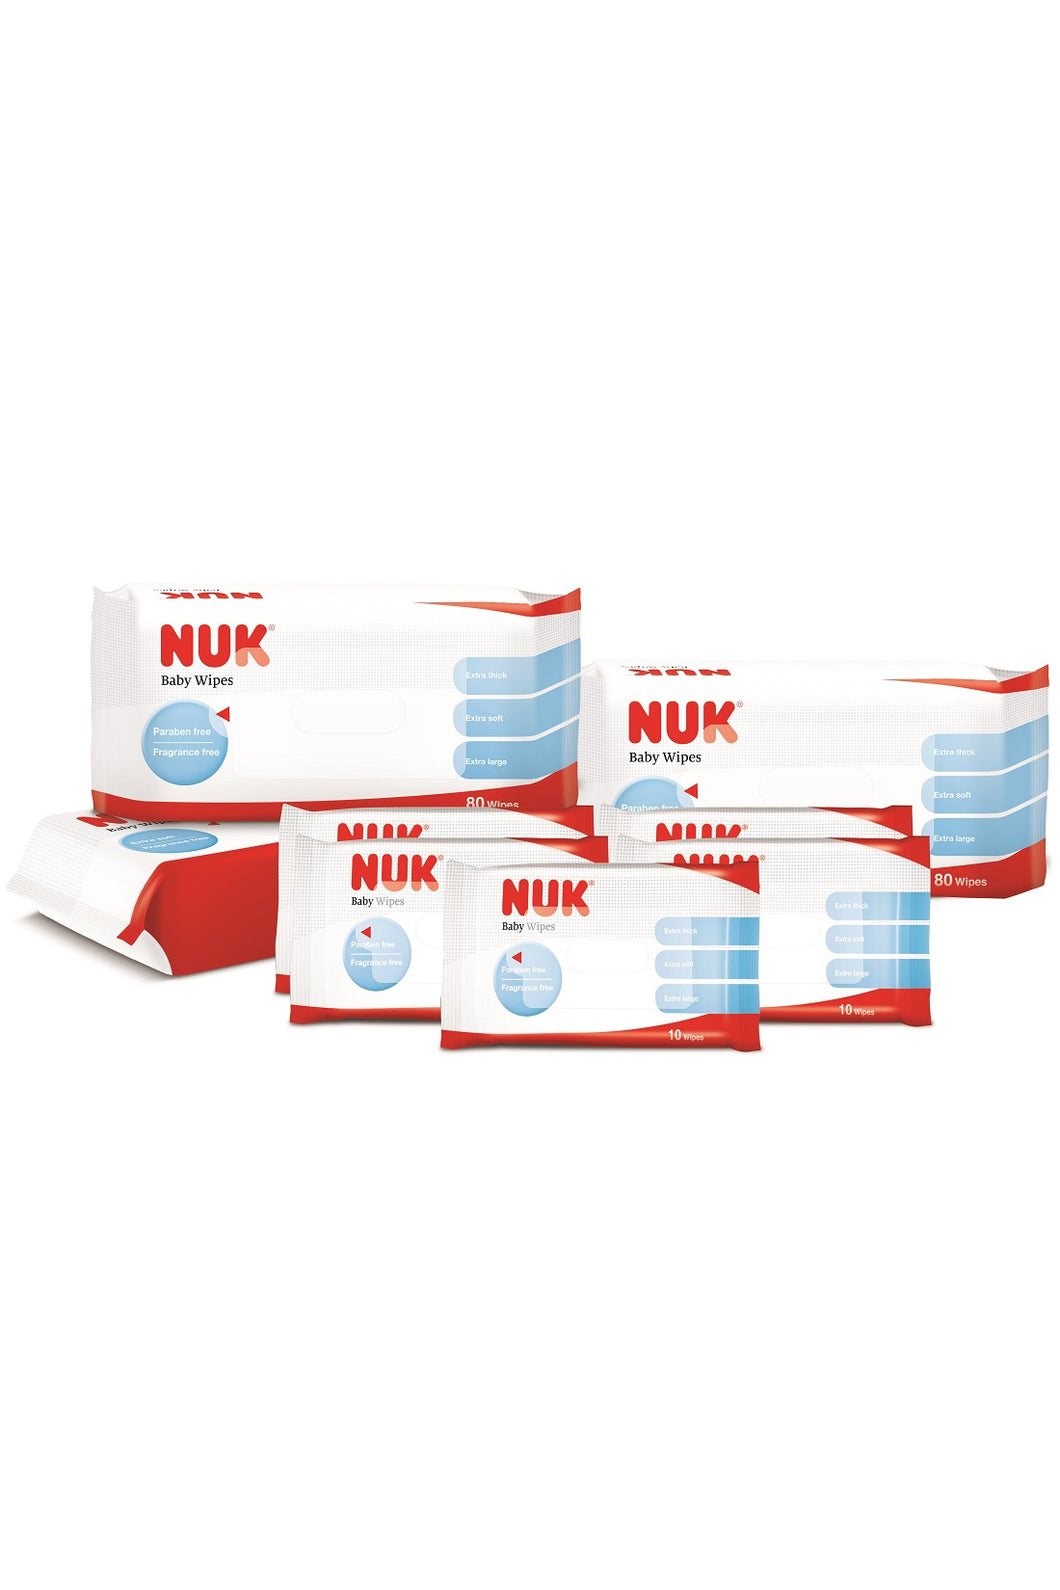 NUK Baby Wipes Value Pack 80pcs x 3 + 10pcs x 5 1